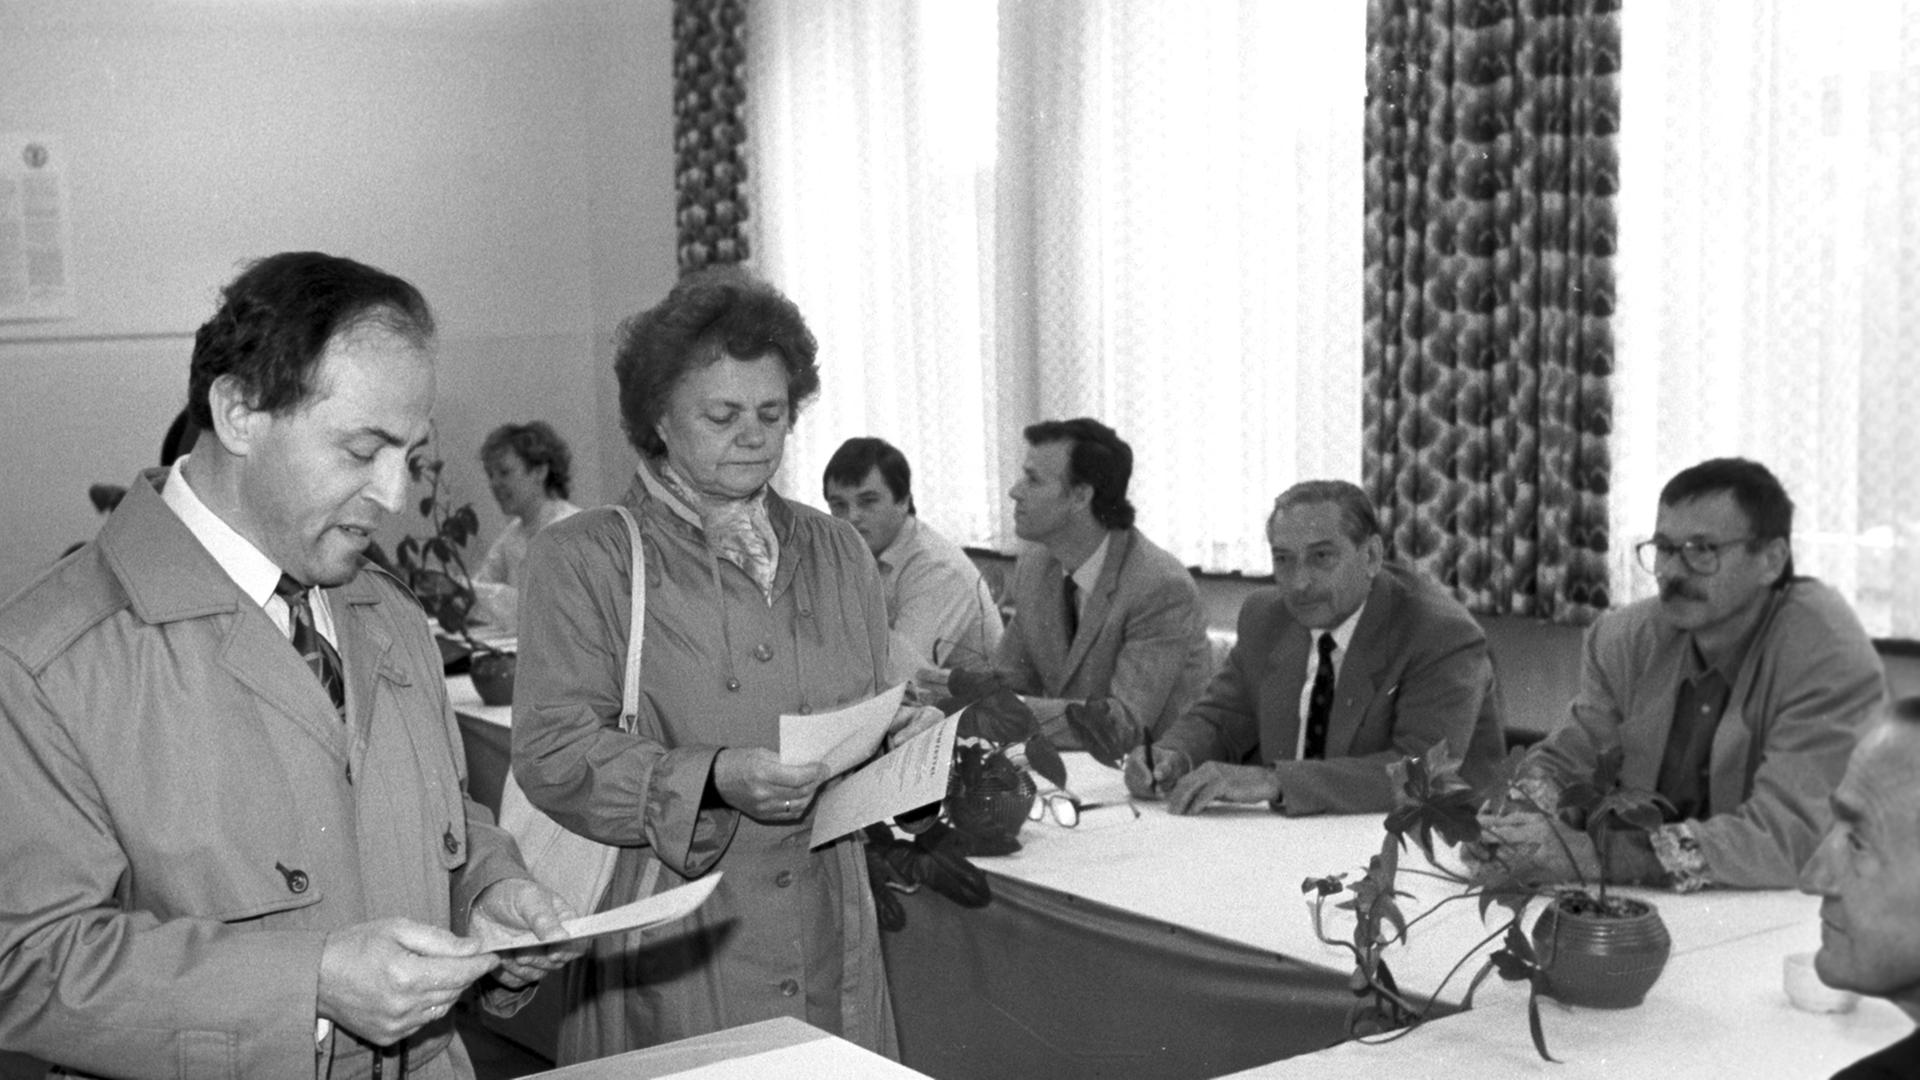 Bei der Kommunalwahl am 07.05.1989 in Karl-Marx-Stadt (heute Chemnitz). Wahlfälschungen bei diesen Wahlen in der DDR waren mit ein Auslöser der friedlichen Revolution im Herbst 1989.